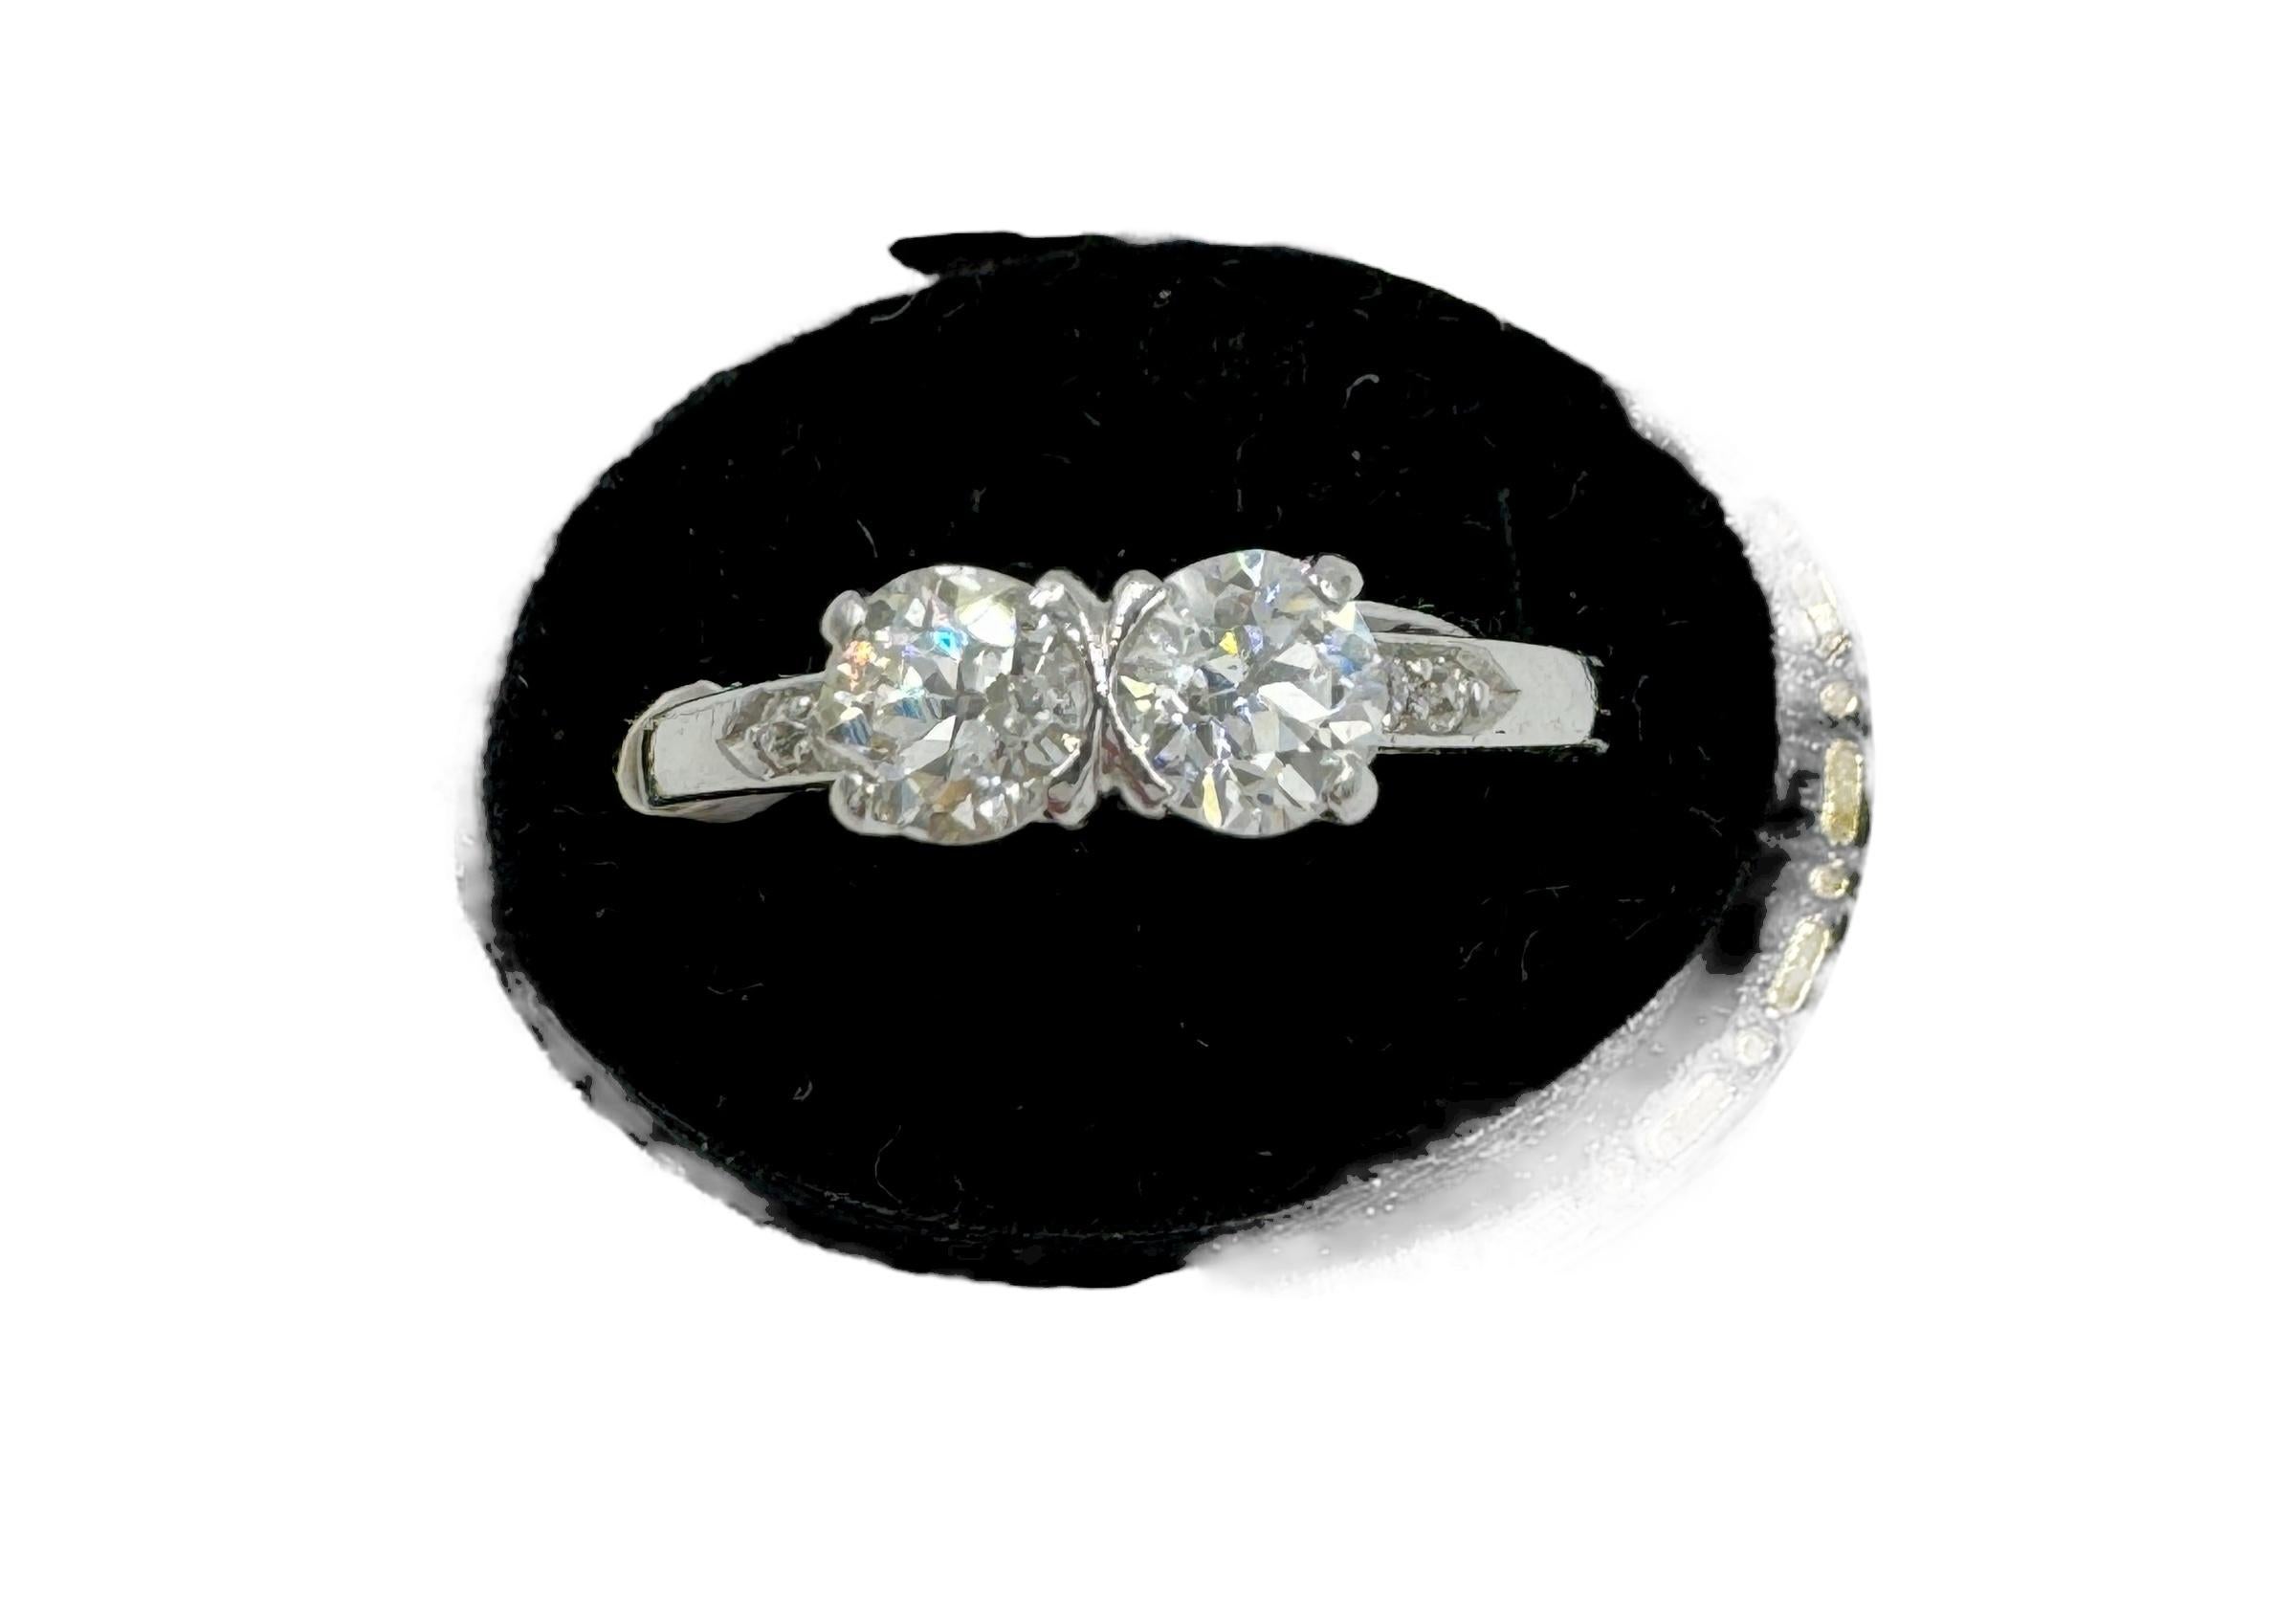 1930er Toi et Moi Diamantring mit zwei Steinen aus Platin.

Der Toi Et Moi Diamantring mit zwei Steinen aus Platin aus den 1930er Jahren ist ein zeitloses Schmuckstück, das die Eleganz und Raffinesse der Art-Déco-Ära verkörpert. Dieser